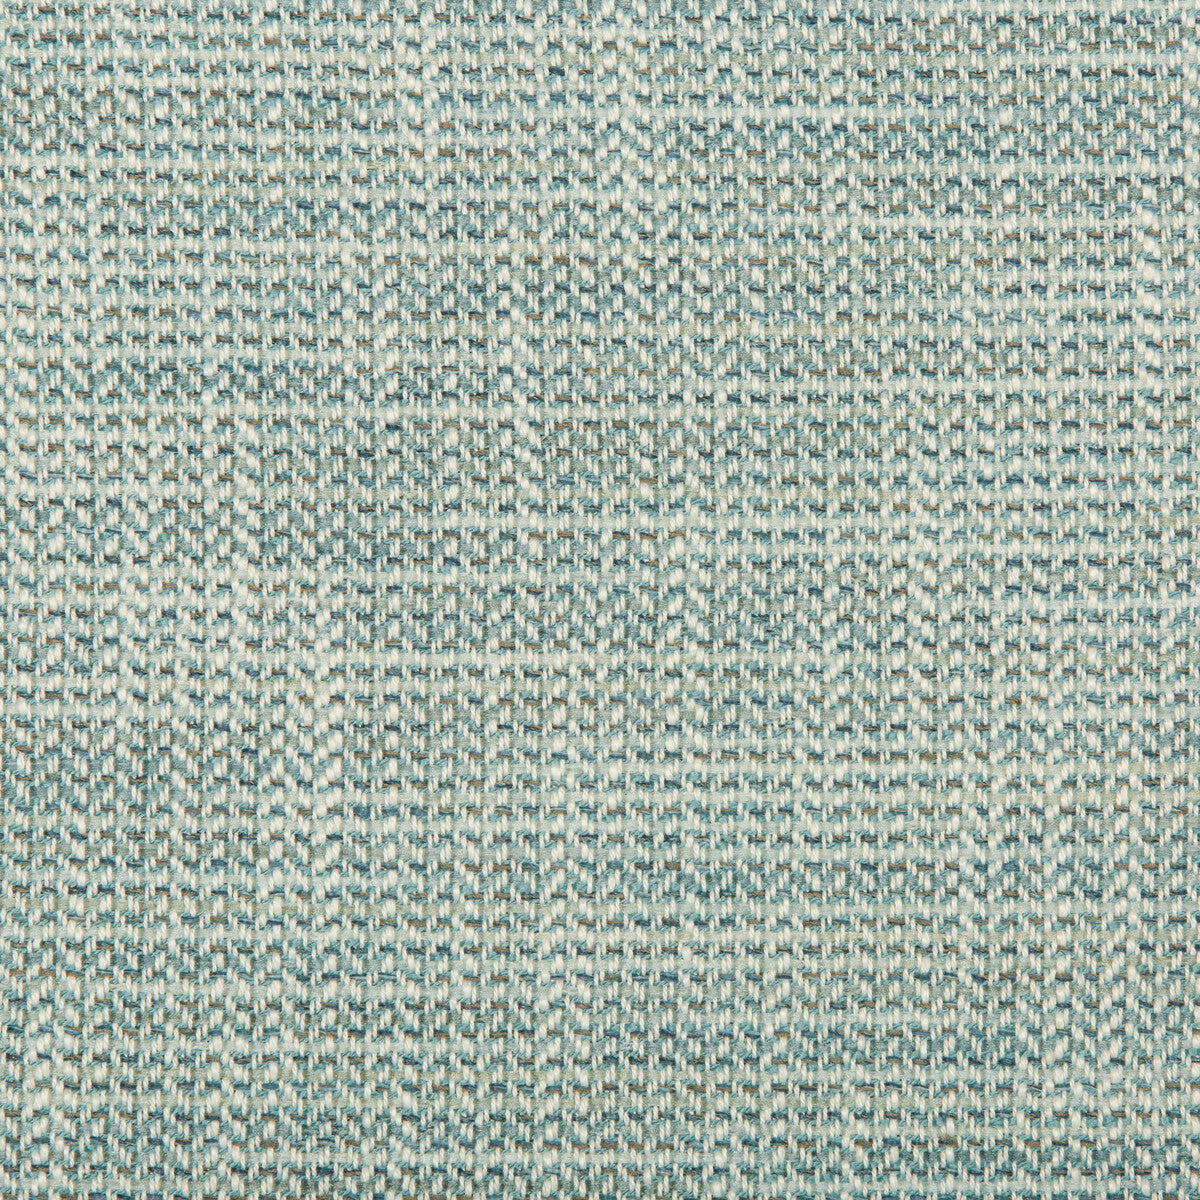 Kravet Design fabric in 35679-13 color - pattern 35679.13.0 - by Kravet Design